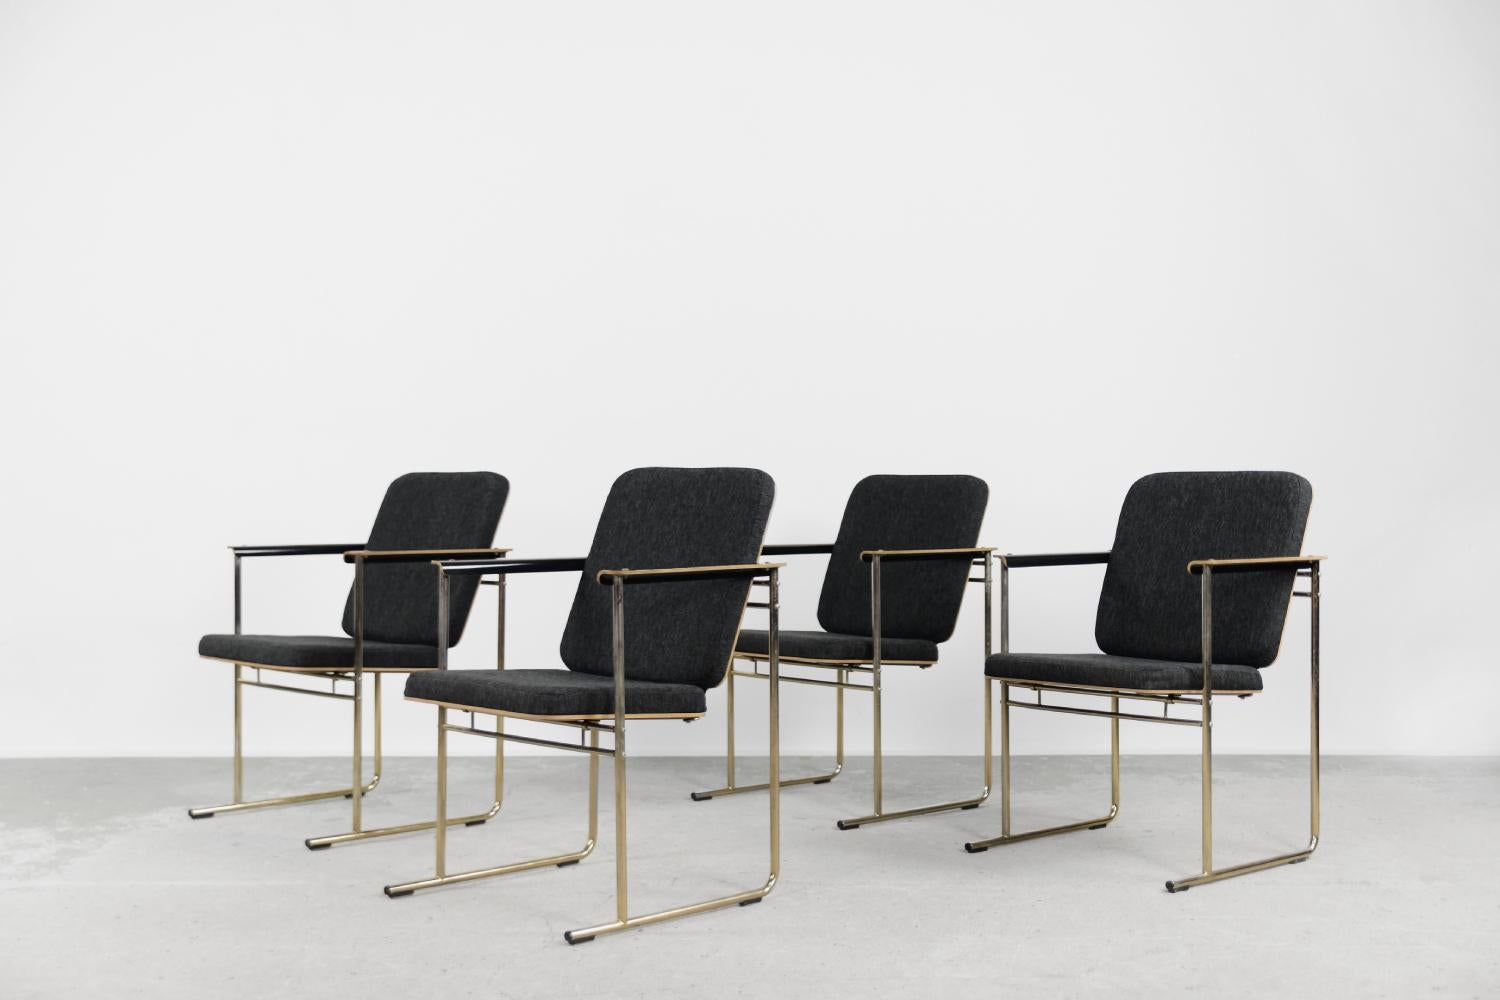 Cet ensemble de quatre chaises Skaala a été conçu par Yrjö Kukkapuro pour la manufacture finlandaise Avarte dans les années 1980. Grâce à leur look moderne et minimal, ils trouveront facilement leur place dans le salon ou le bureau. La chaise Skaala